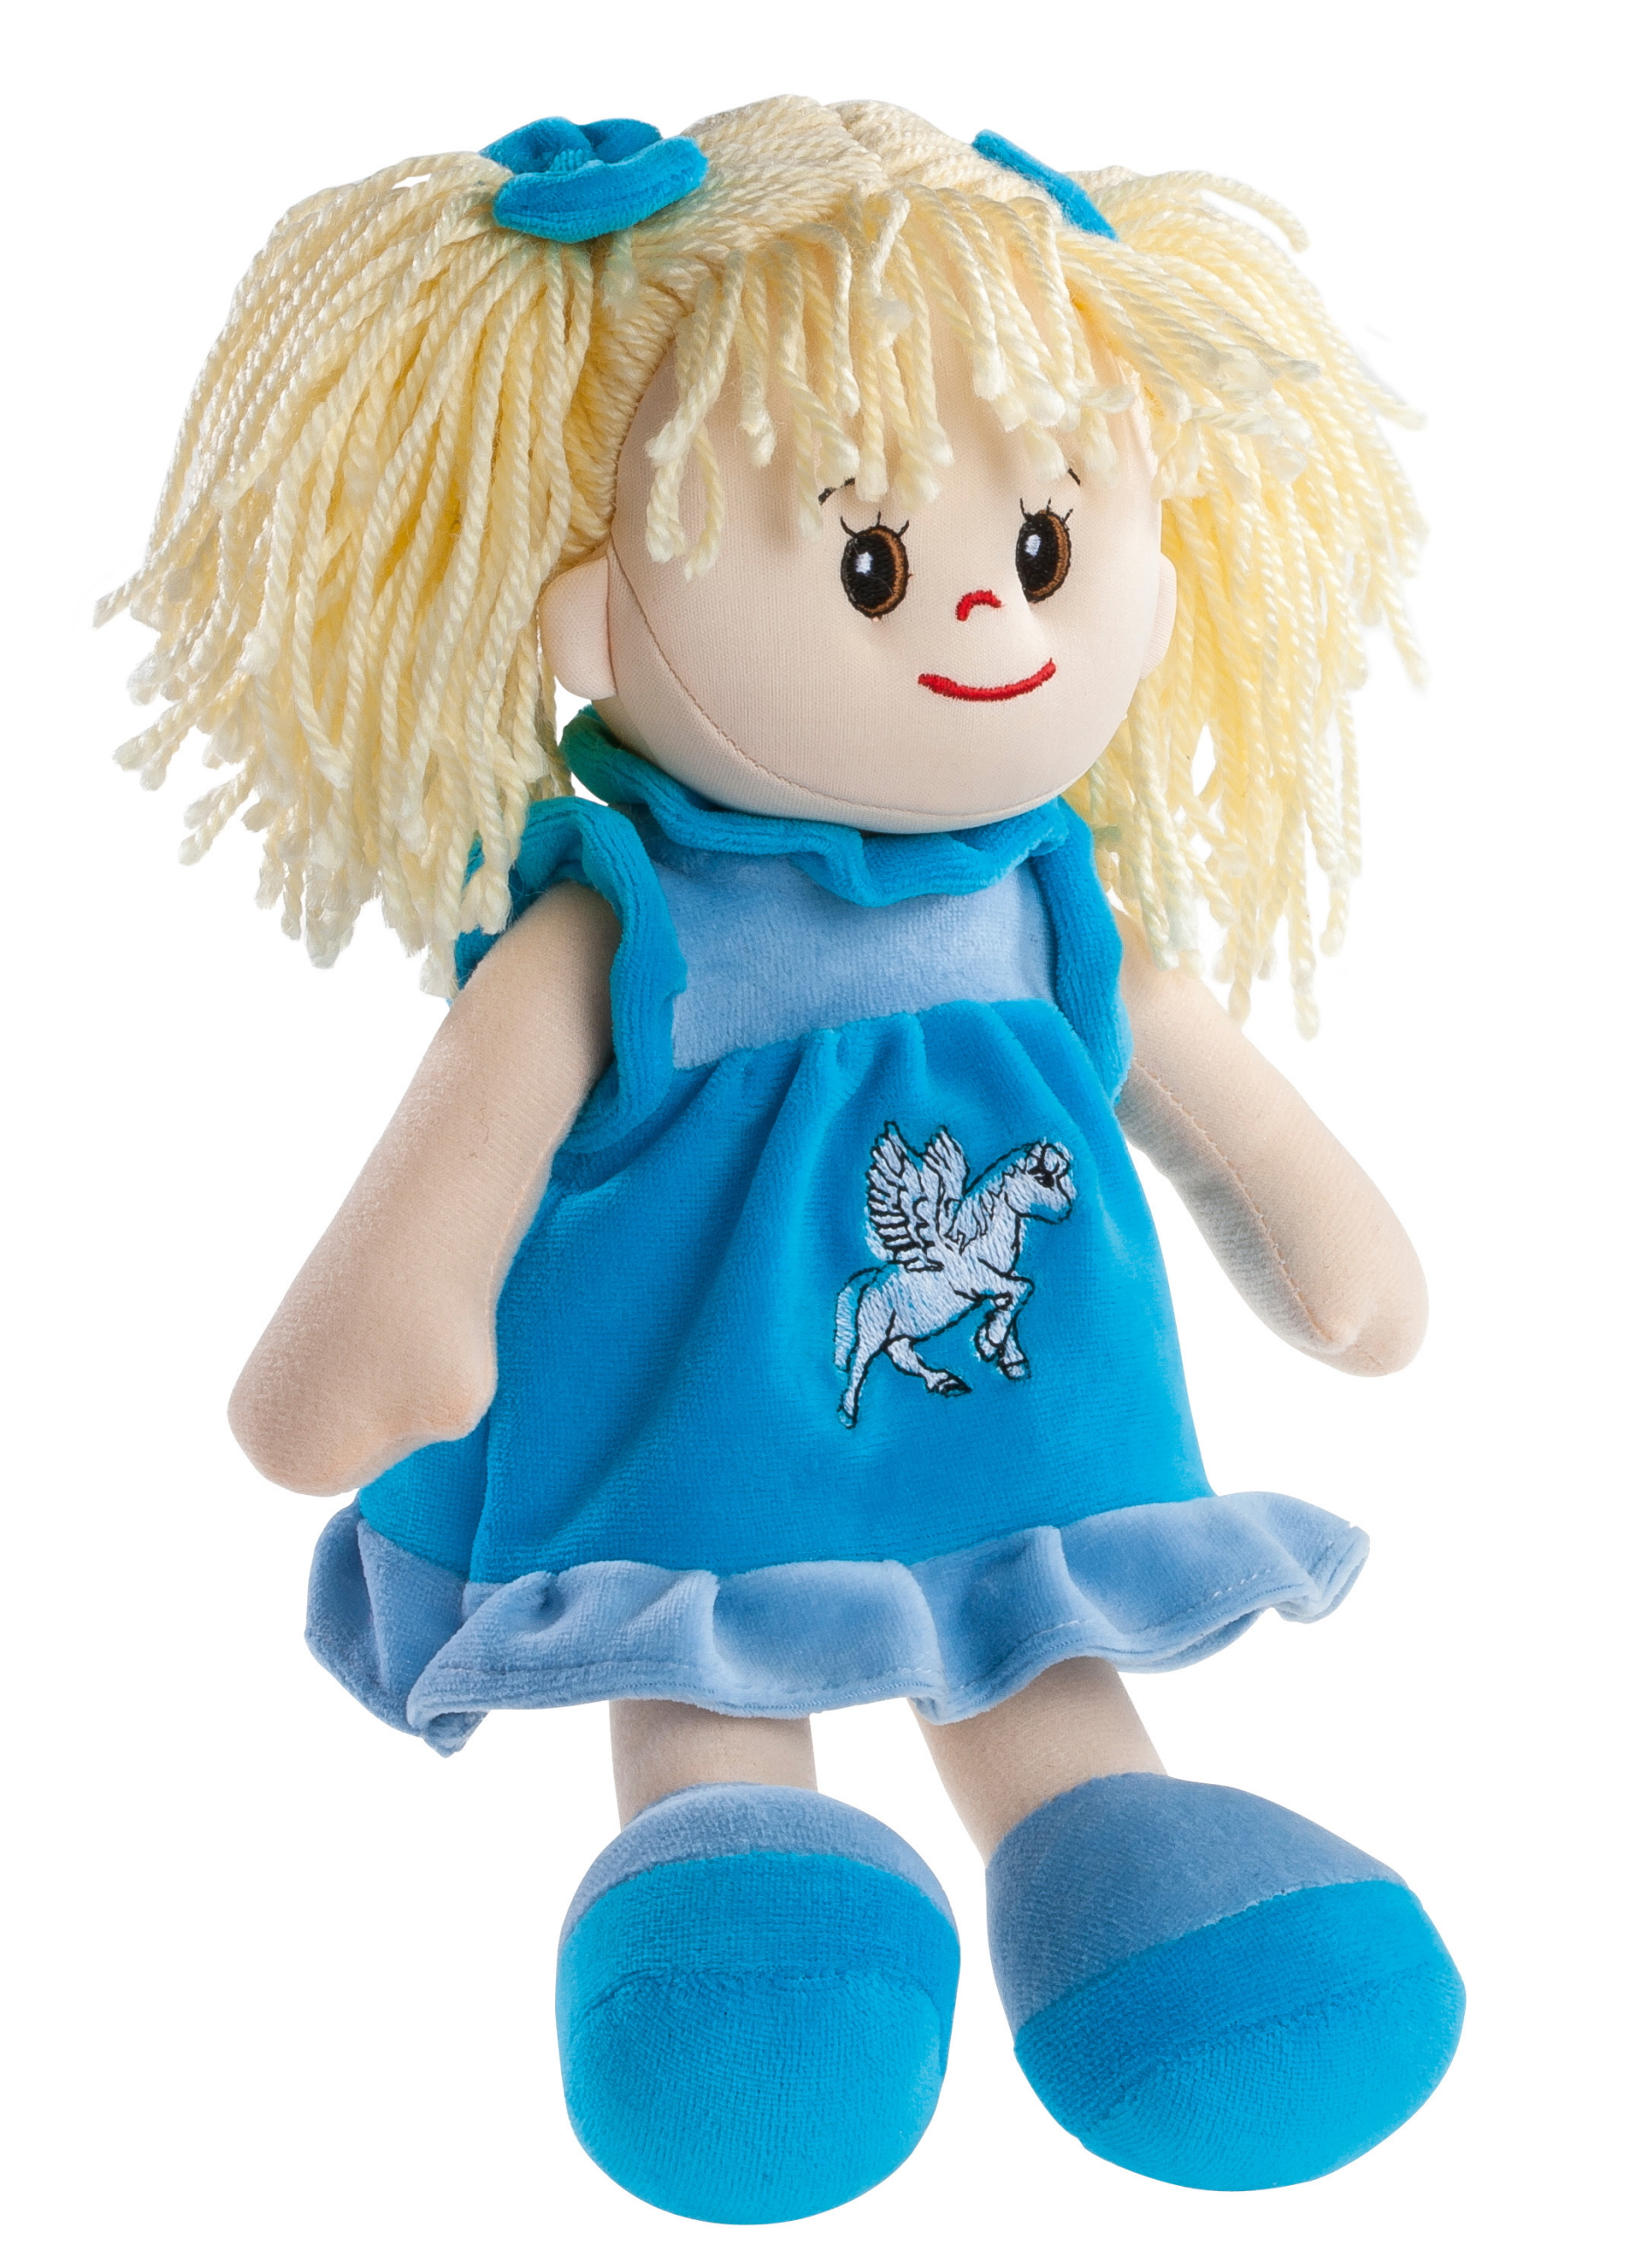 Heunec Poupetta Sindy mit blondem Haar und türkis-blauem Kleidchen und Schühchen in 30cm